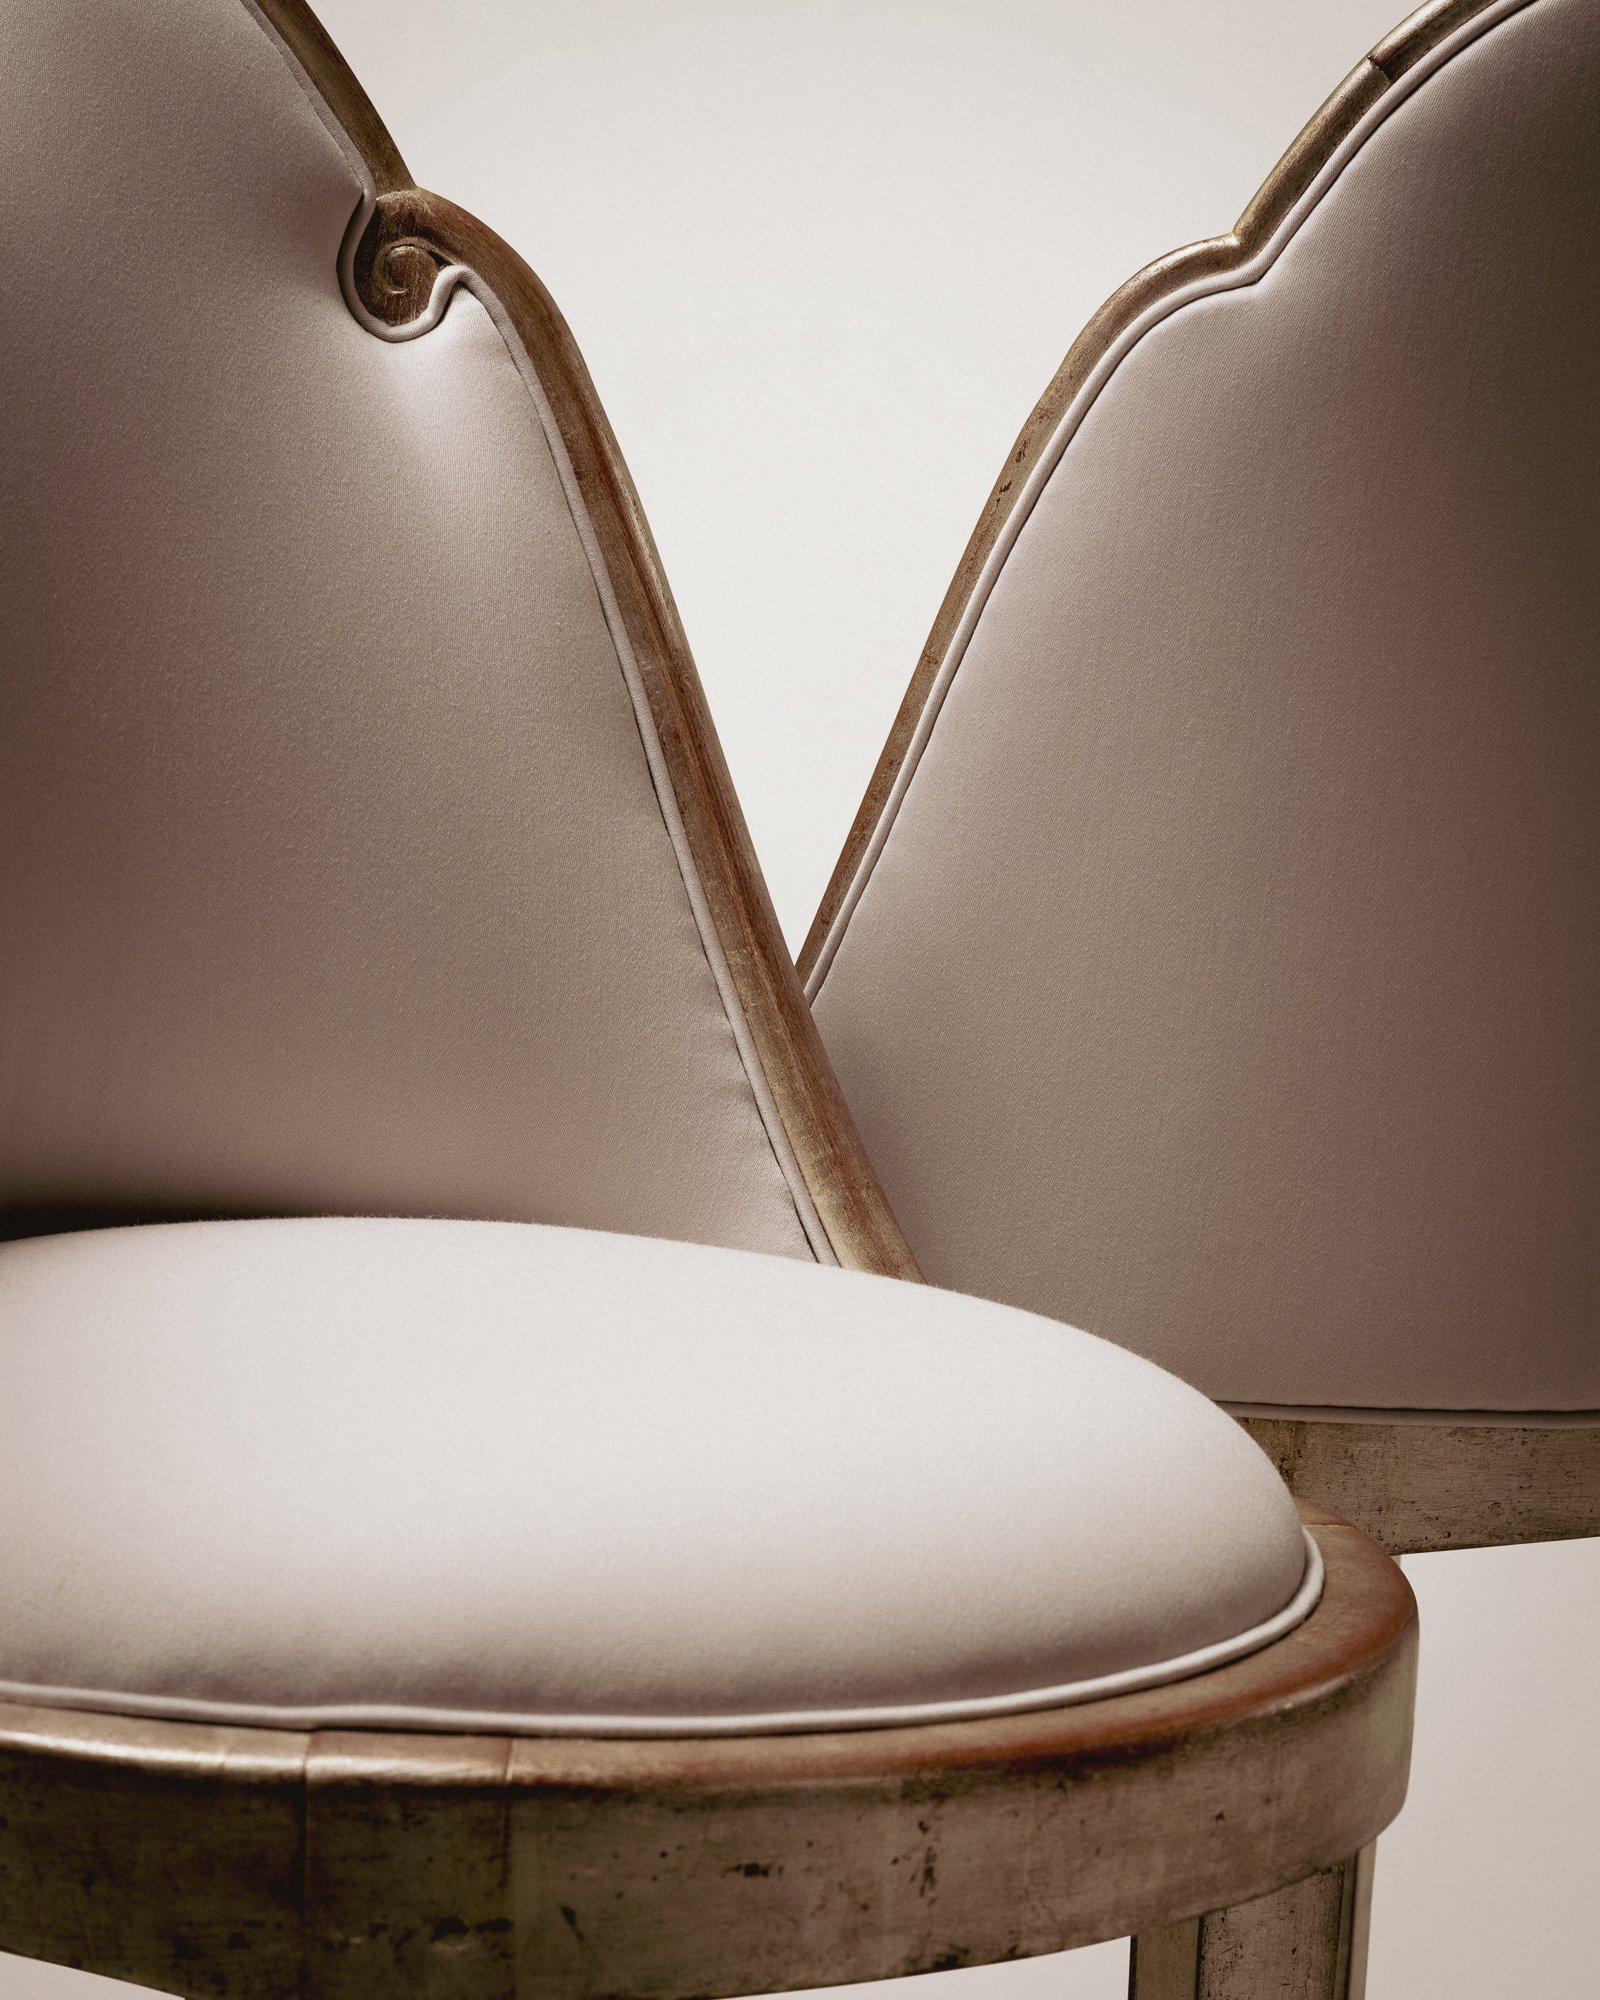 silver chairs detail 2.jpg